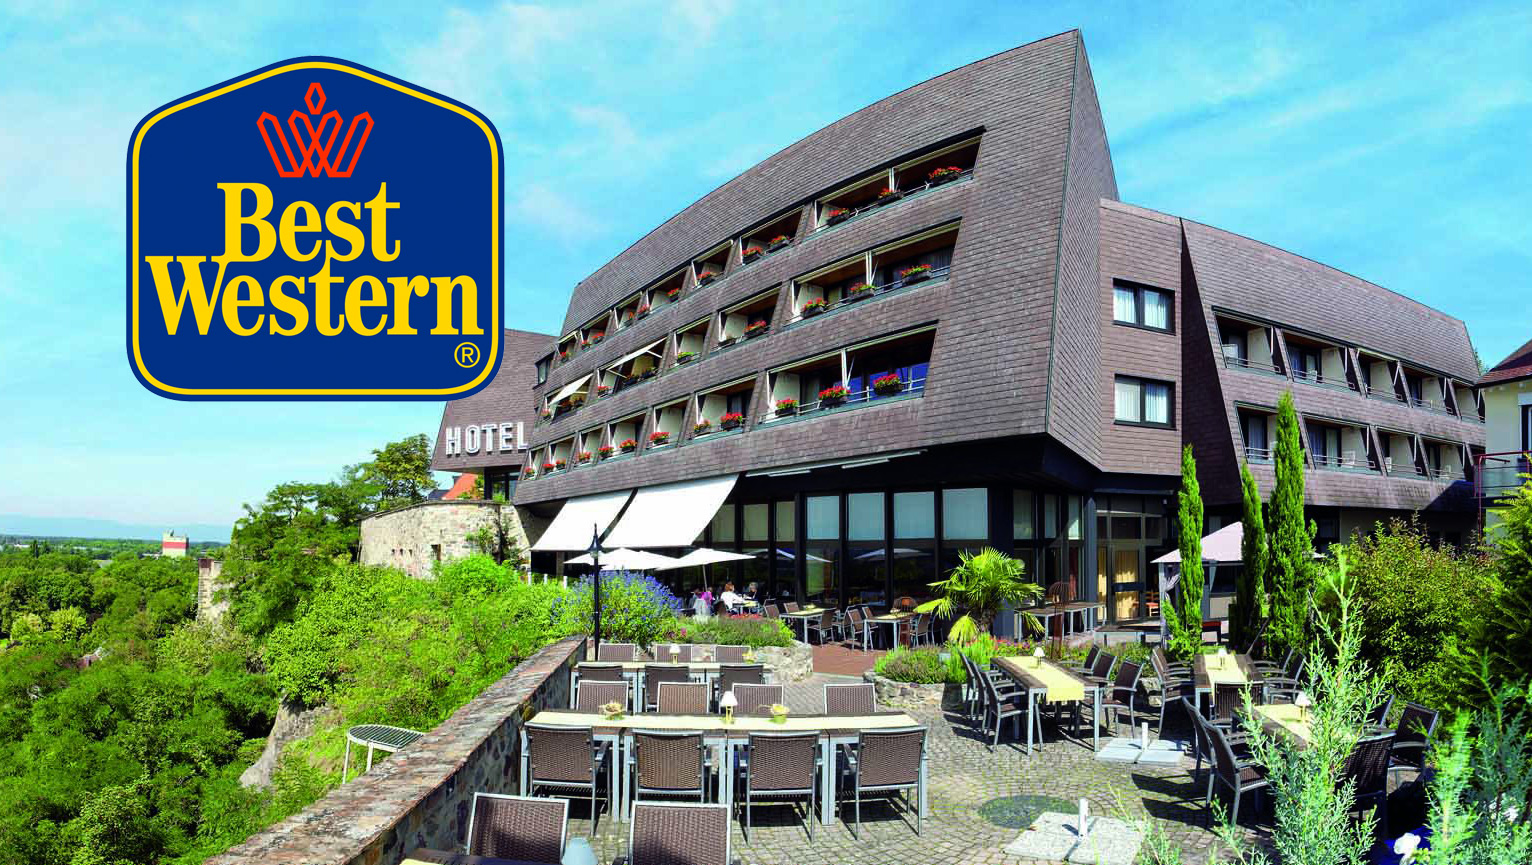 Best Western stellt seine Hotels nahe deutschen Freizeitparks vor